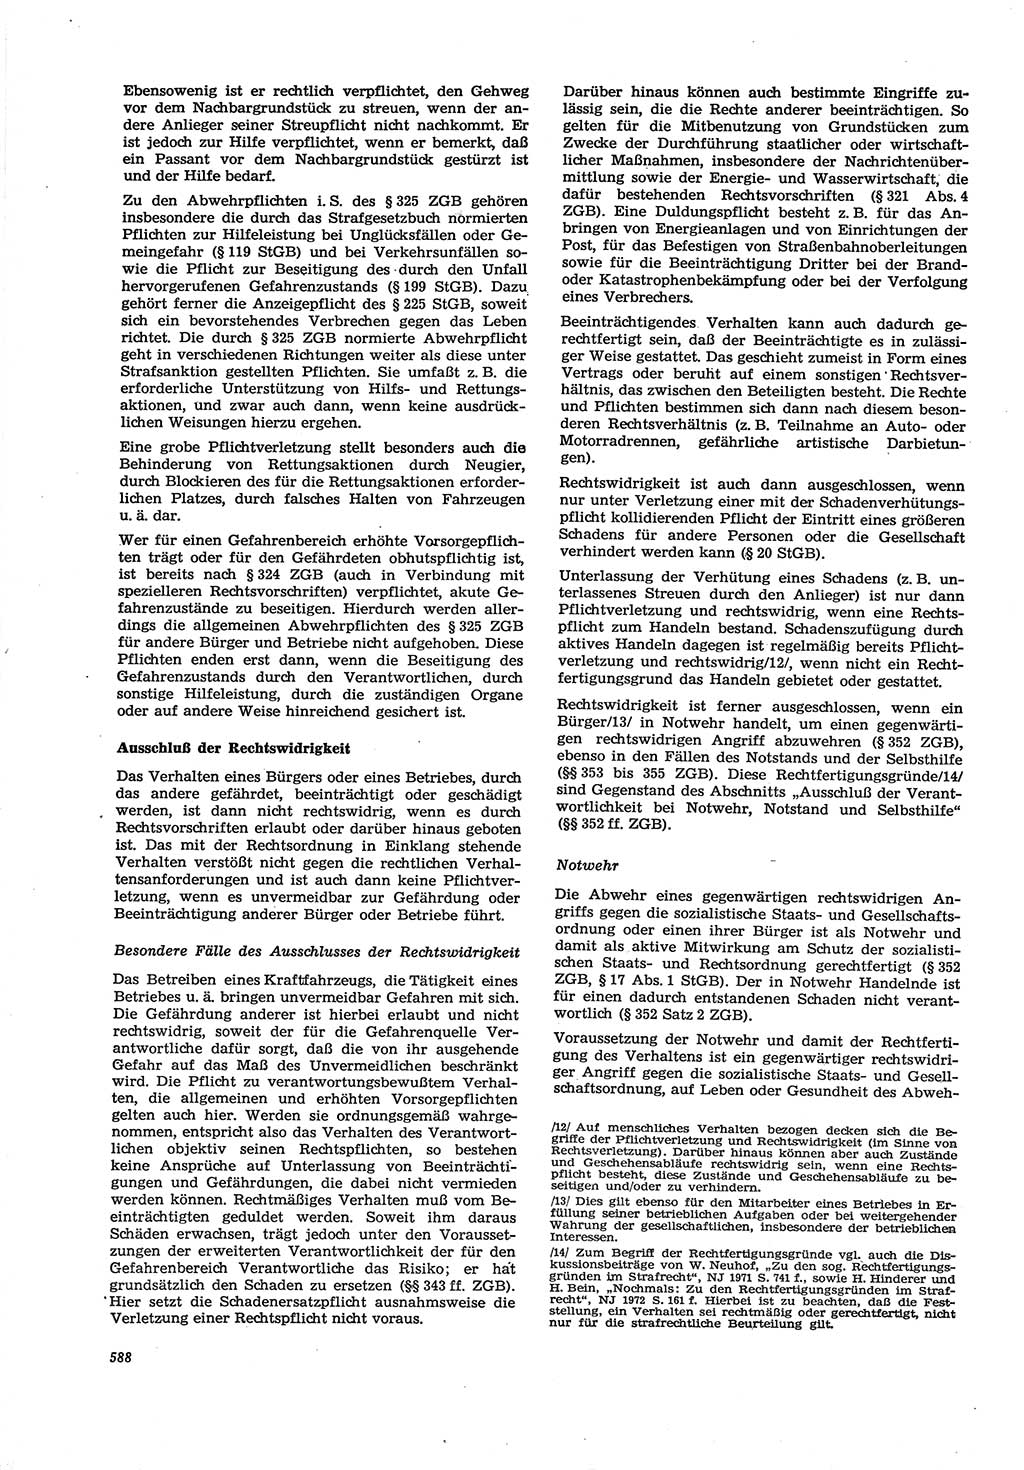 Neue Justiz (NJ), Zeitschrift für Recht und Rechtswissenschaft [Deutsche Demokratische Republik (DDR)], 30. Jahrgang 1976, Seite 588 (NJ DDR 1976, S. 588)